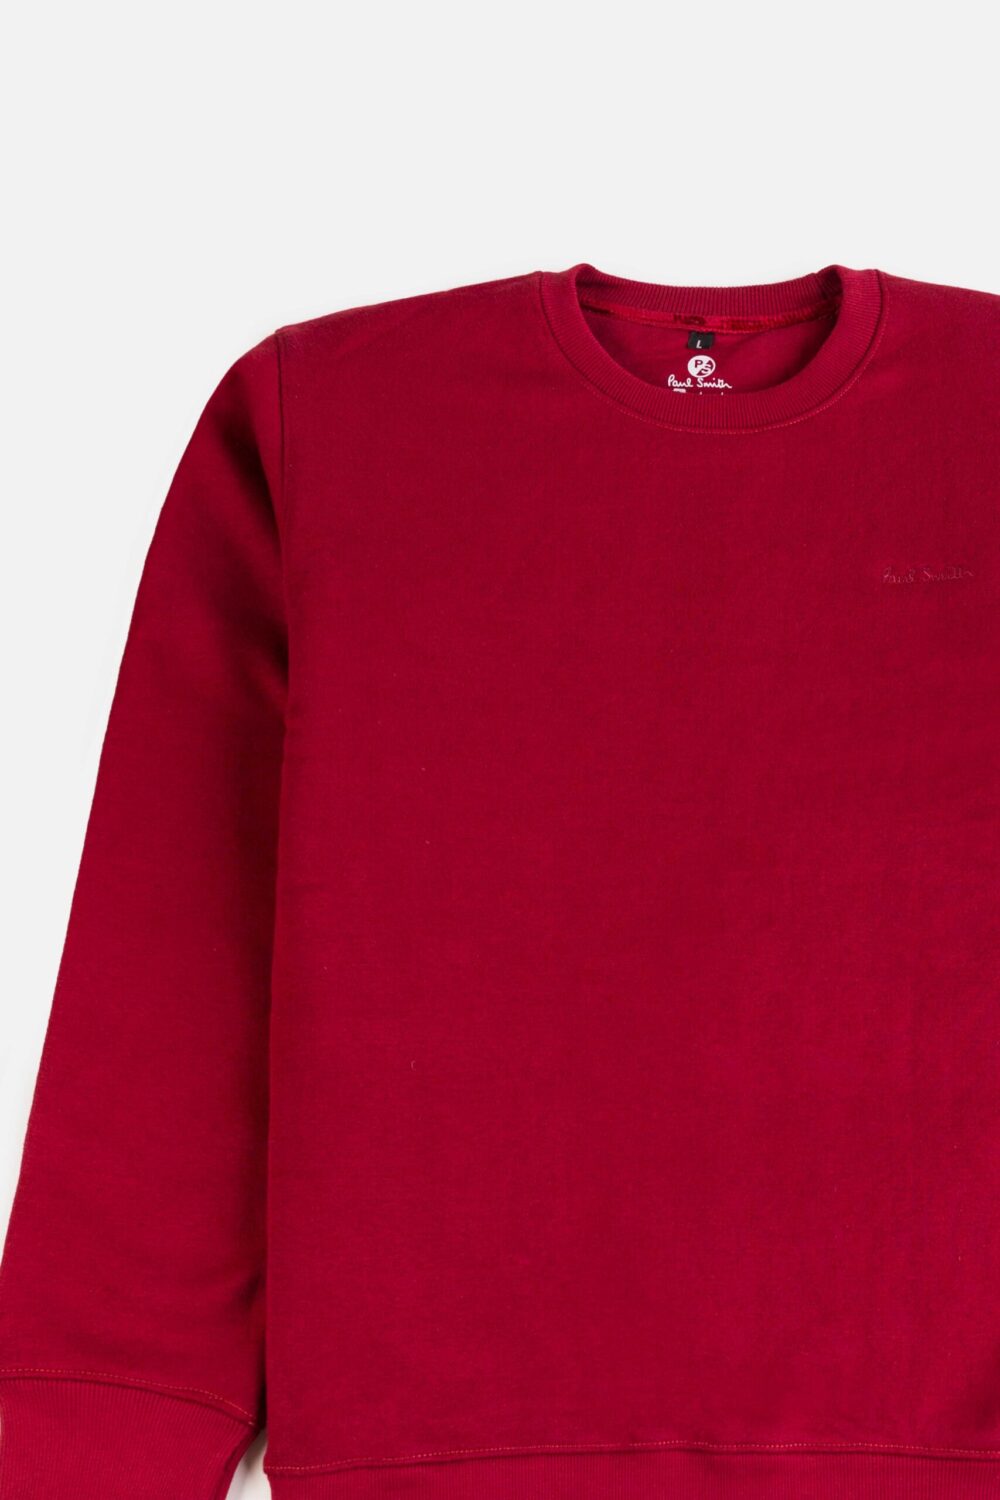 Paul Smith Original Premium Fleece Sweatshirt – Maroon